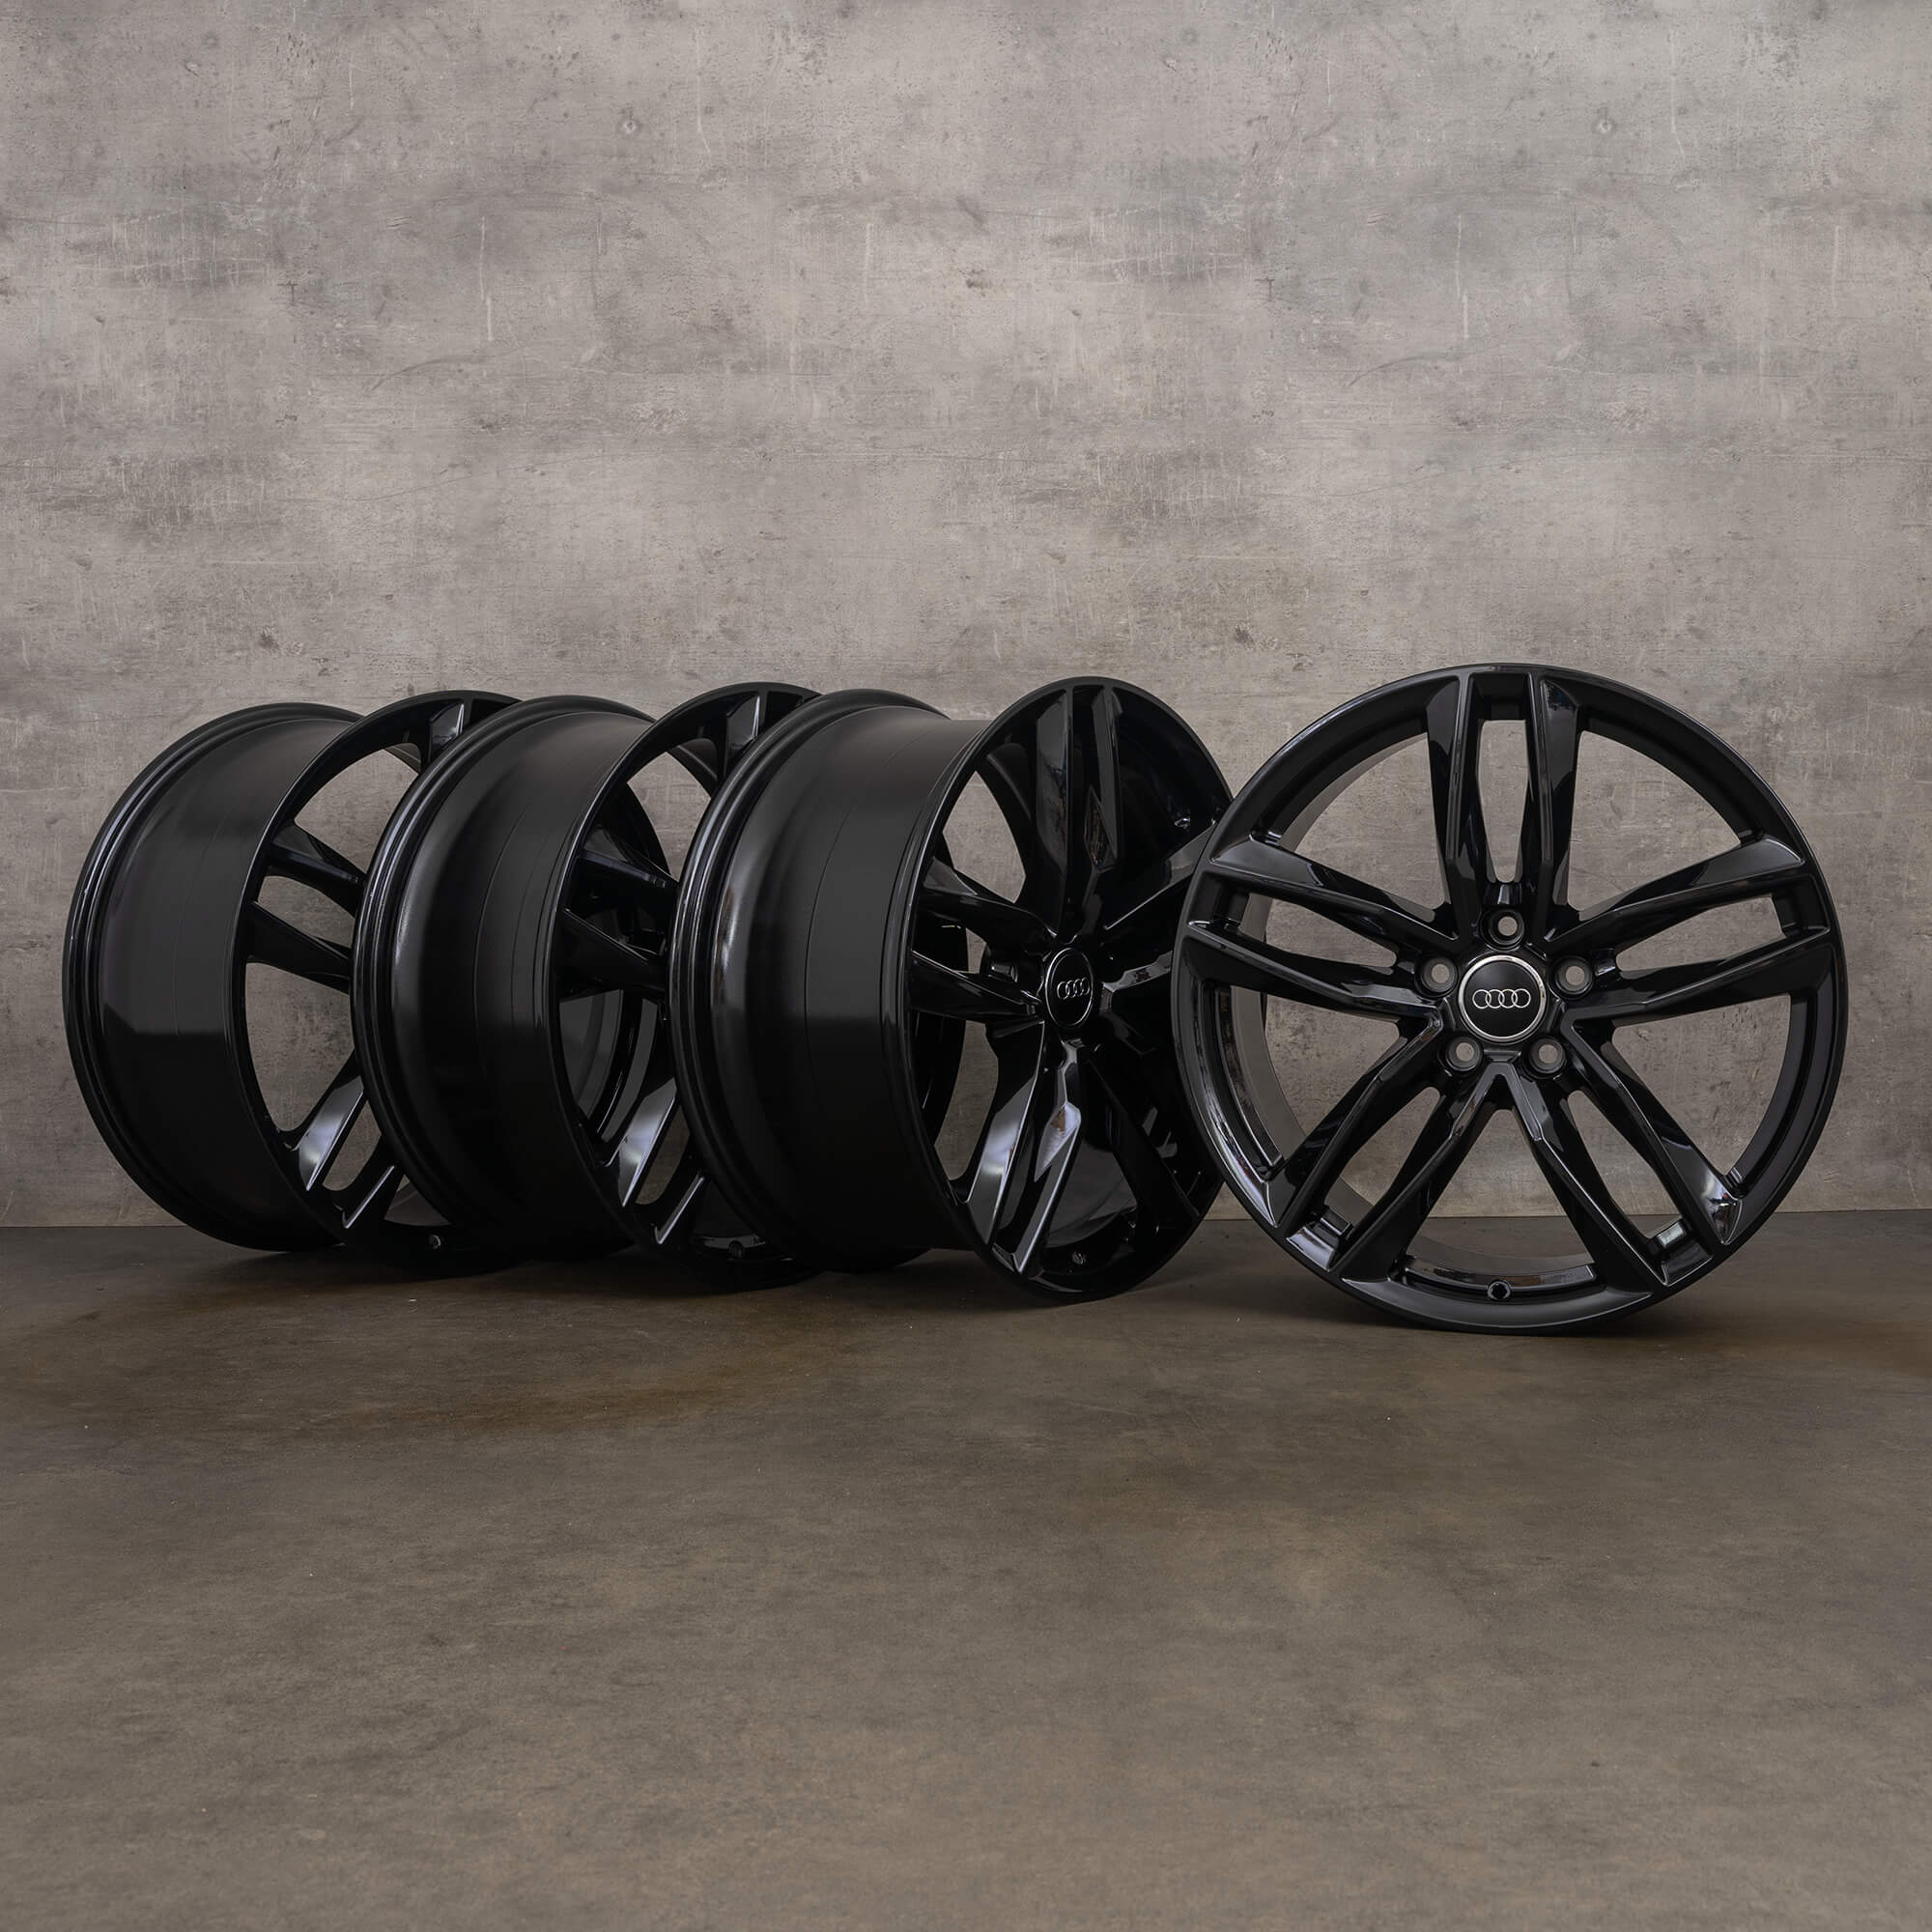 Cerchi originali Audi TT TTS TTRS 8S FV da 19 pollici 8S0601025BG cerchi in alluminio verniciati di nero